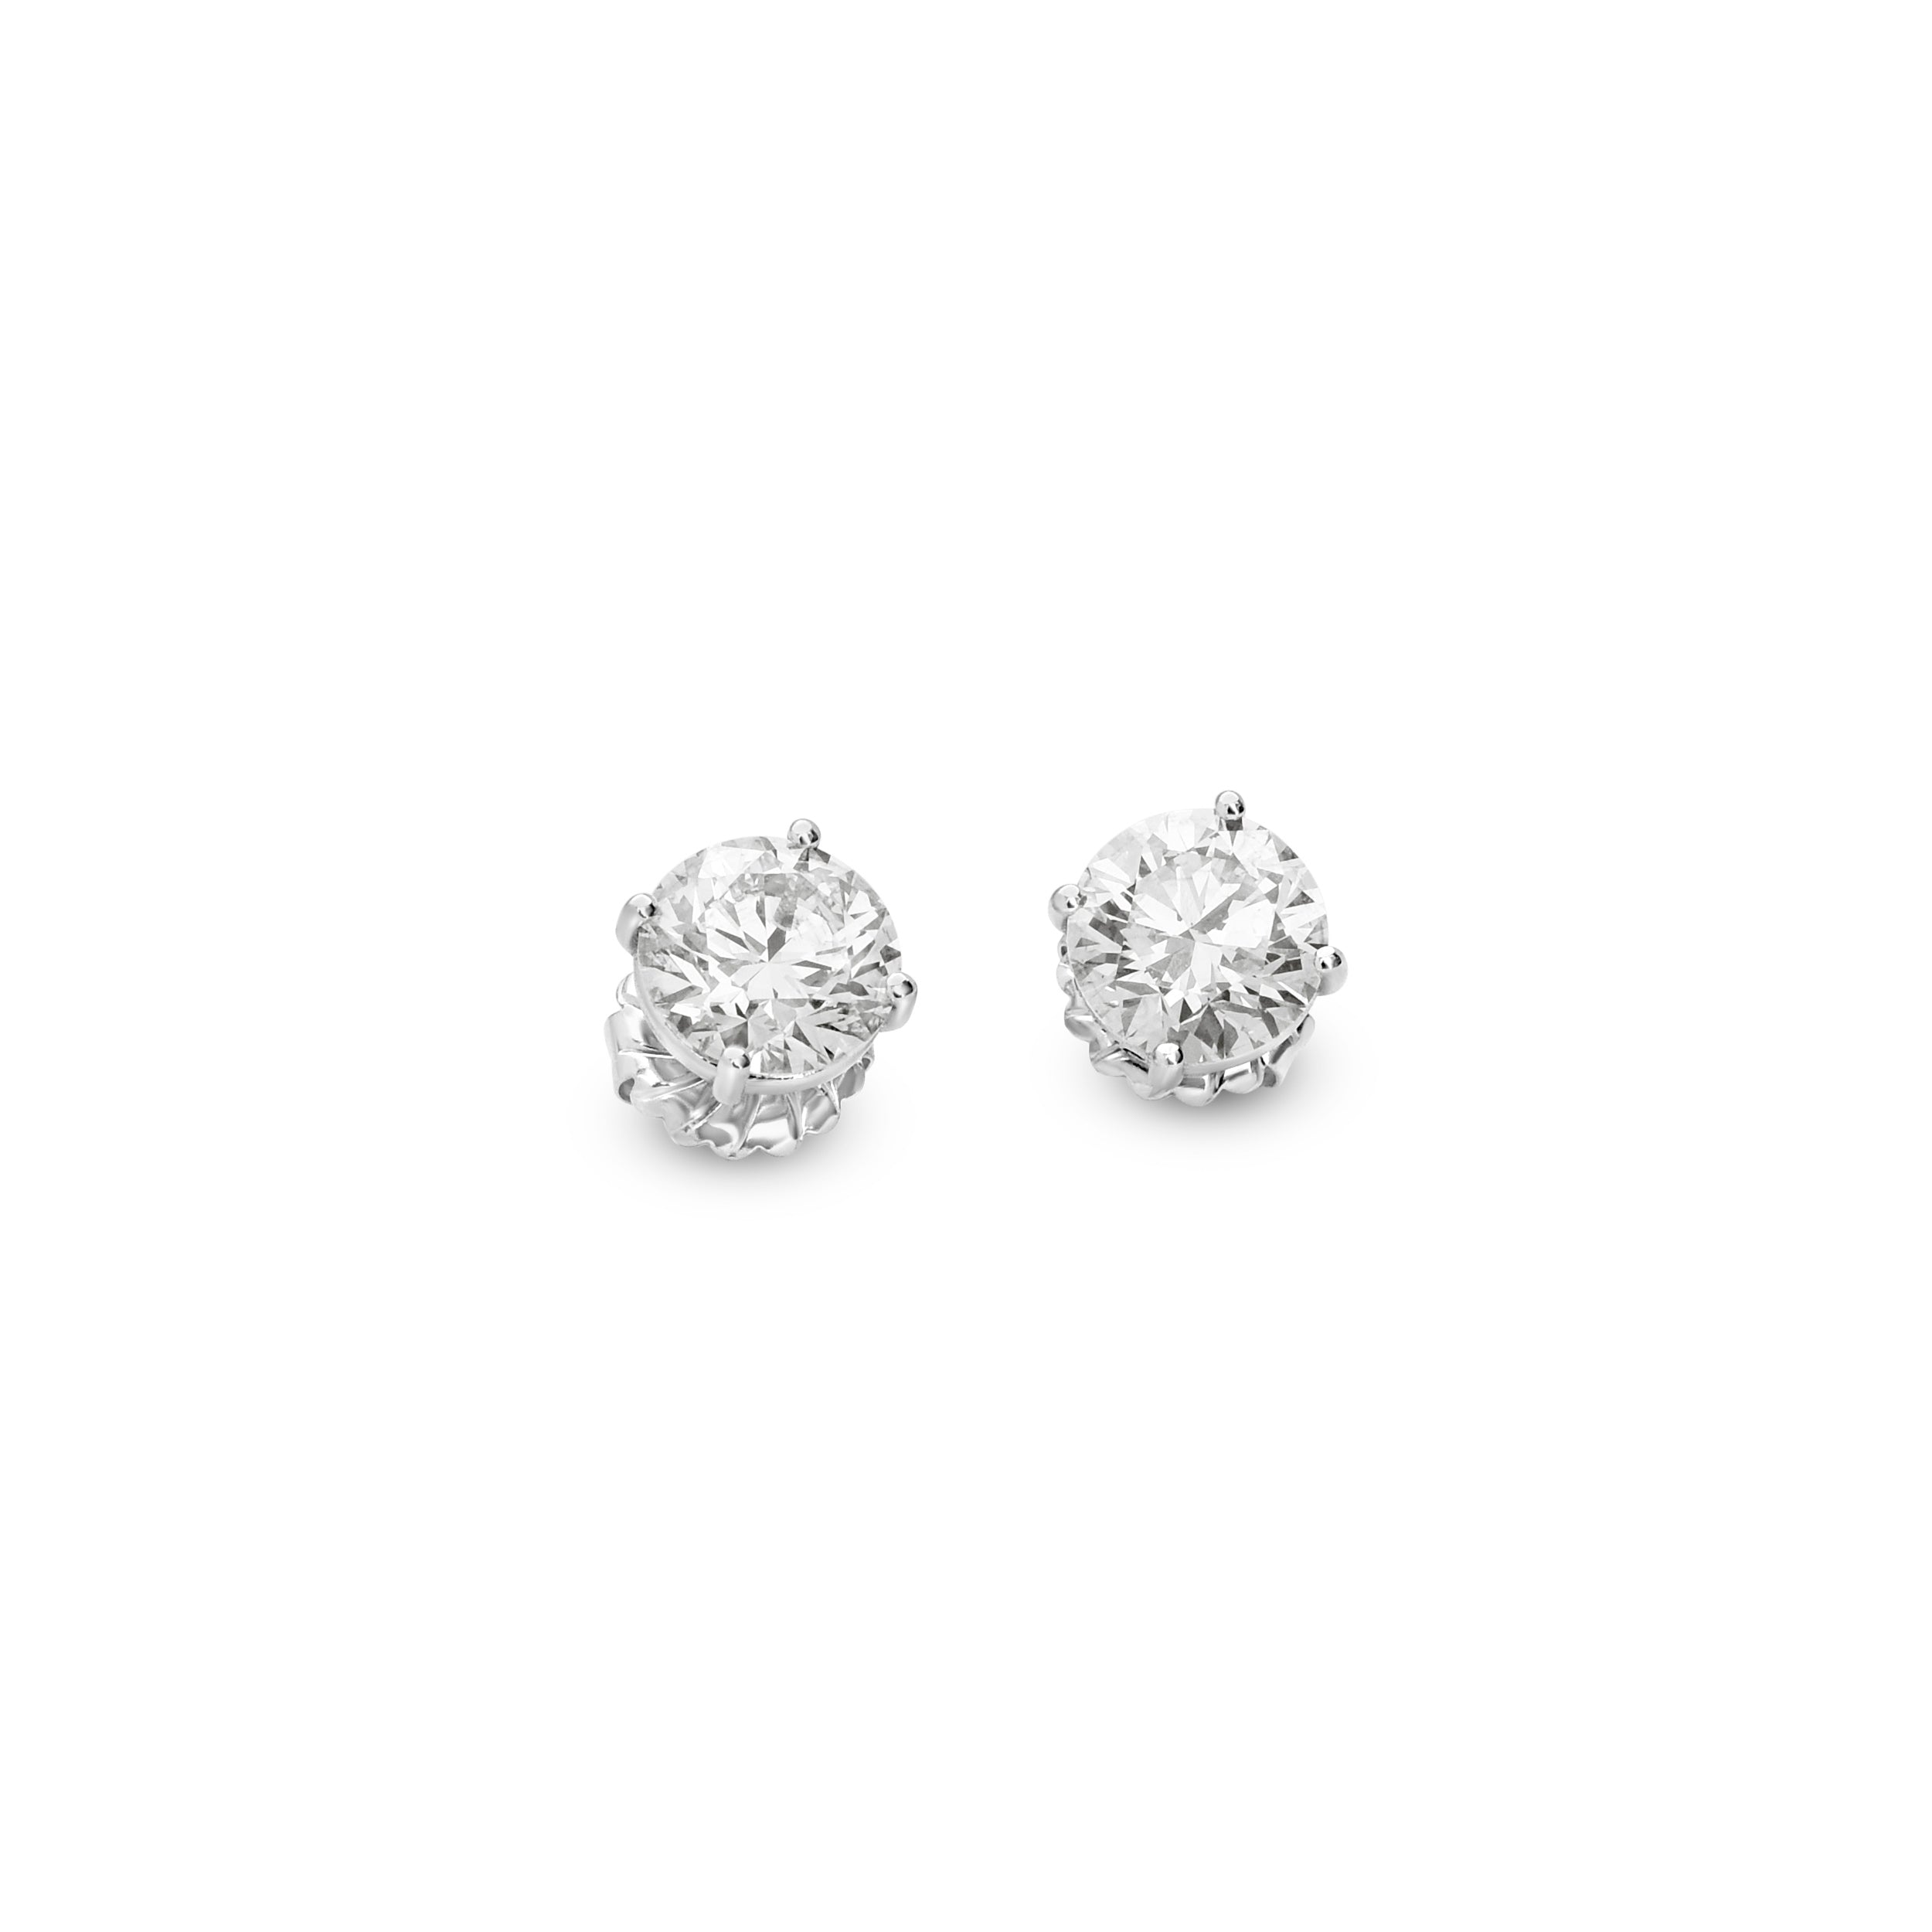 Diamond Stud Earrings - 2.50 Carats Each Ear